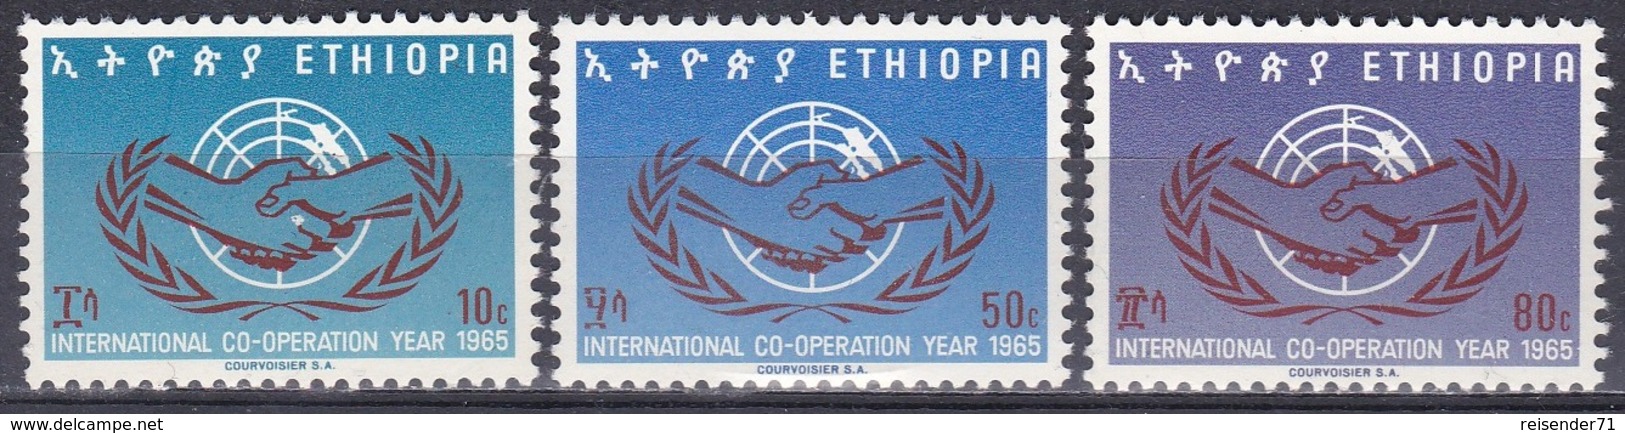 Äthiopien Ethiopia 1965 Organisationen UNO ONU Zusammenarbeit Cooperation Hände Hands, Mi. 518-0 ** - Äthiopien